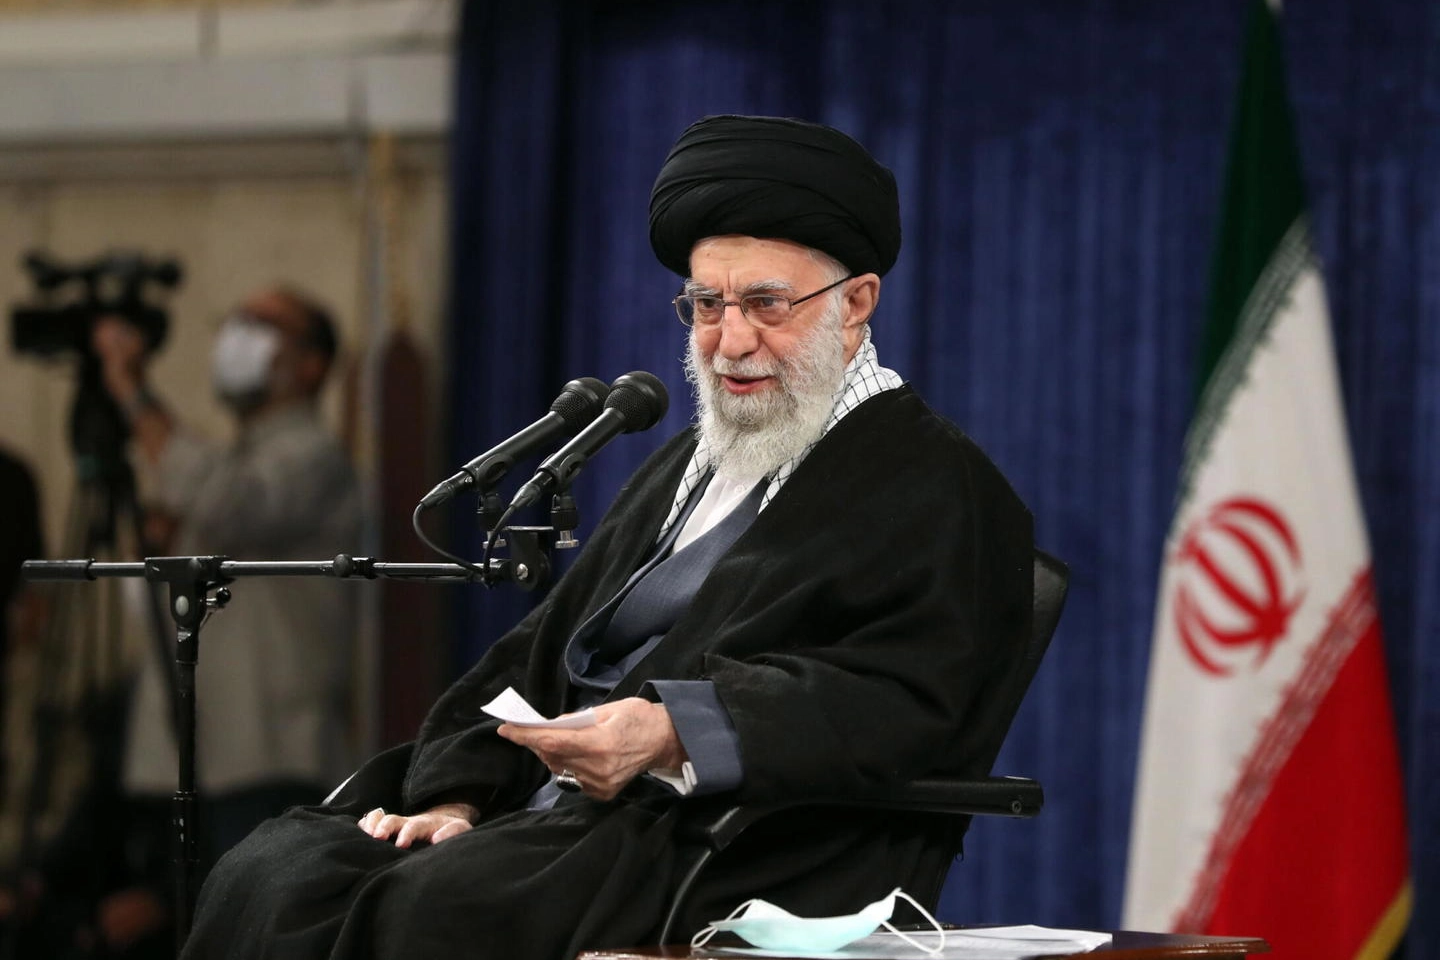 L'ayatollah Ali Khamenei durante un meeting a Teheran il 9 gennaio 